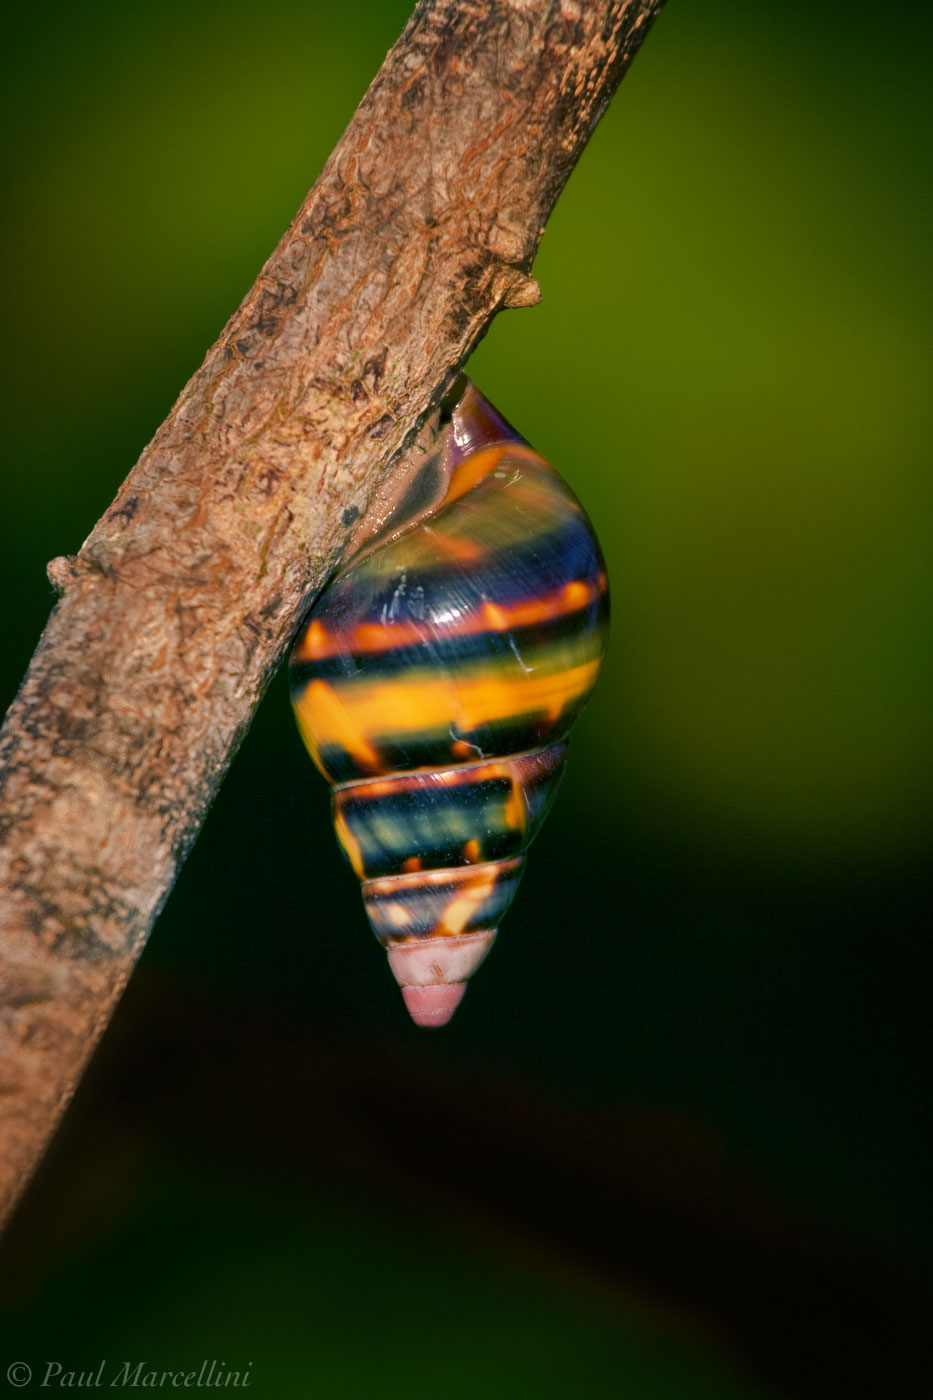 One of the 60 color forms of the beautfiul Liguus Tree Snails (Liguus fasciatus).